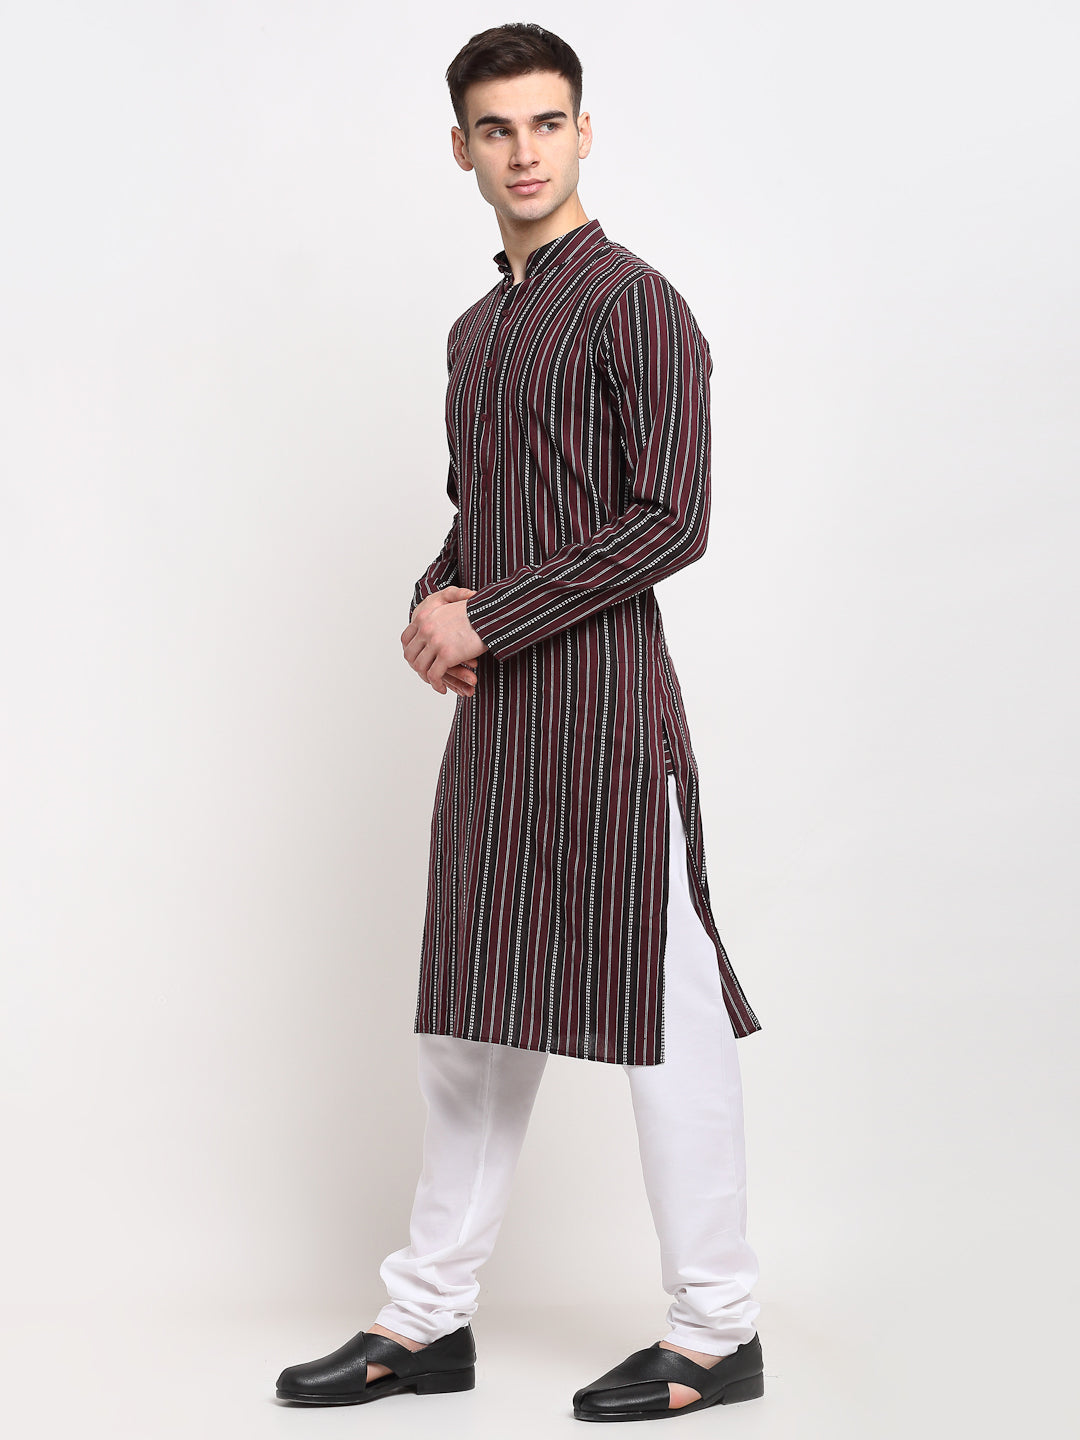 Jompers Men's Maroon Cotton Striped Kurta Payjama Sets